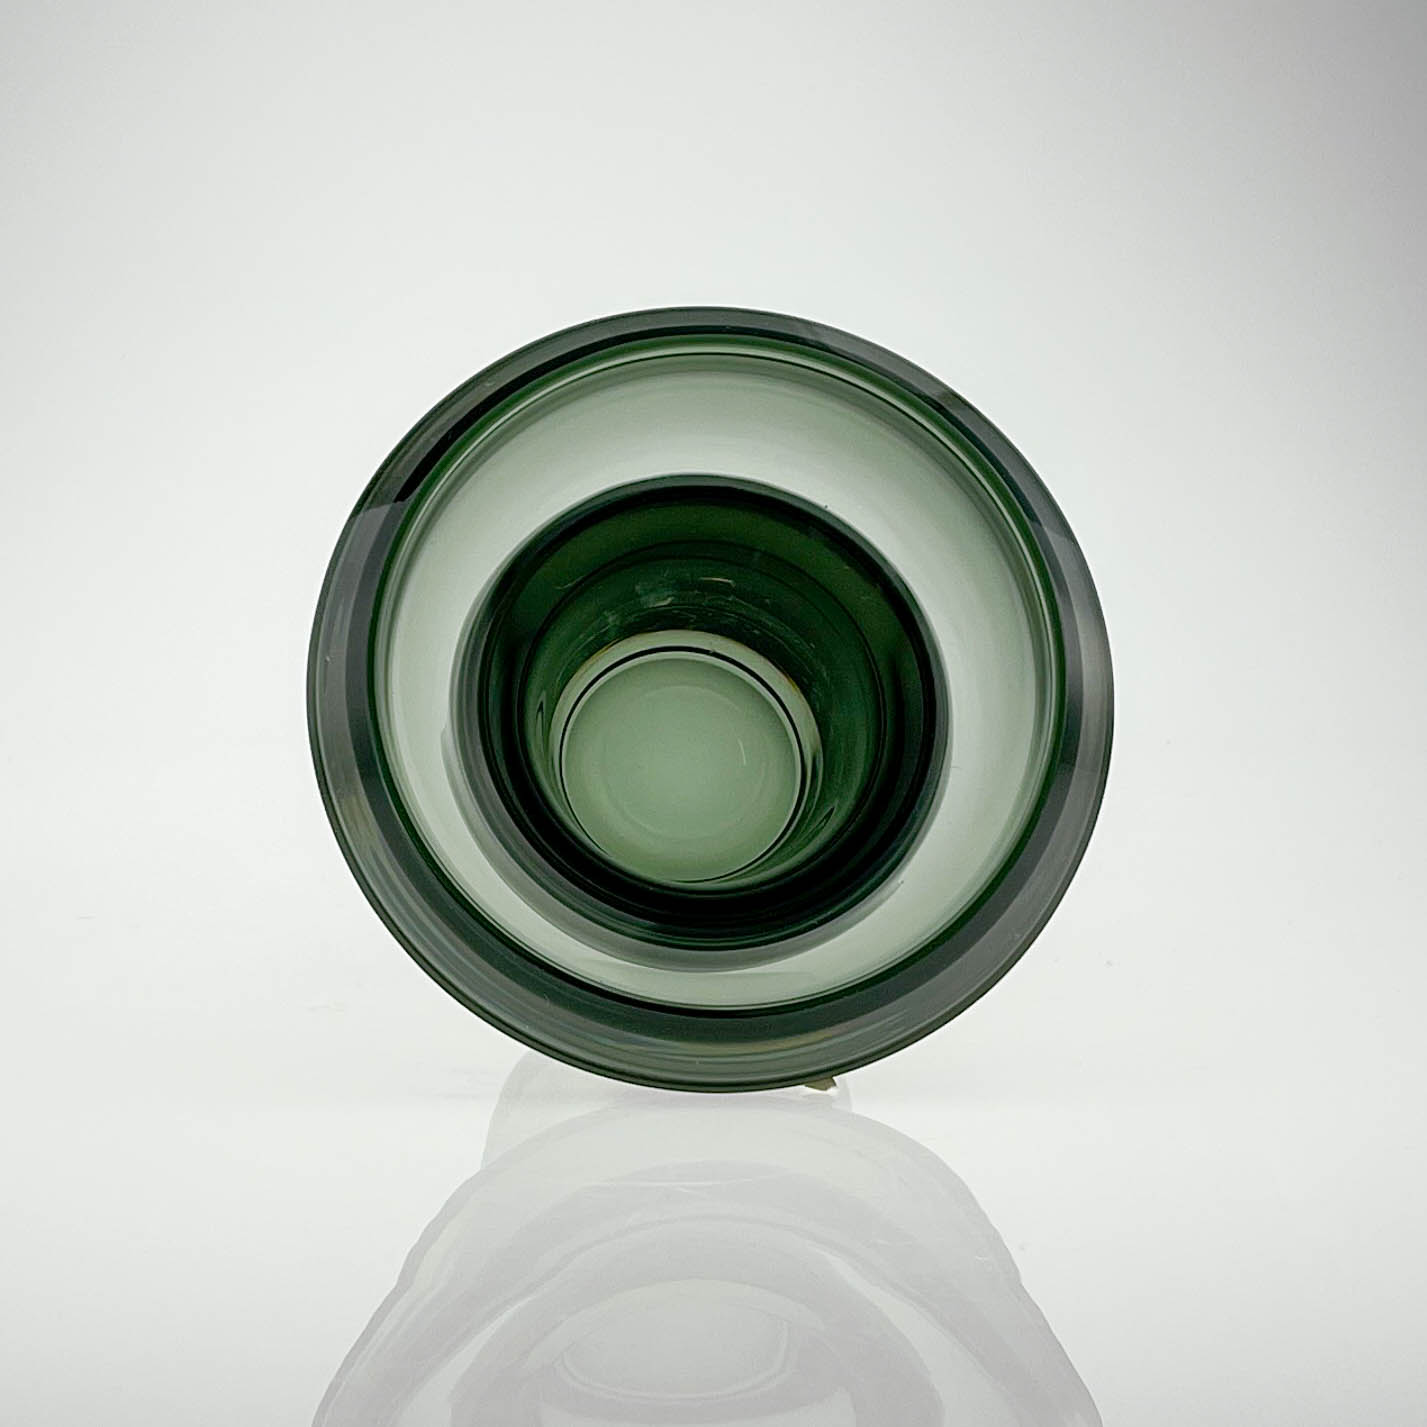 Kaj Franck - A grey-green cased glass Art-Object, Model KF260- Nuutajärvi-Notsjö, Finland 1962